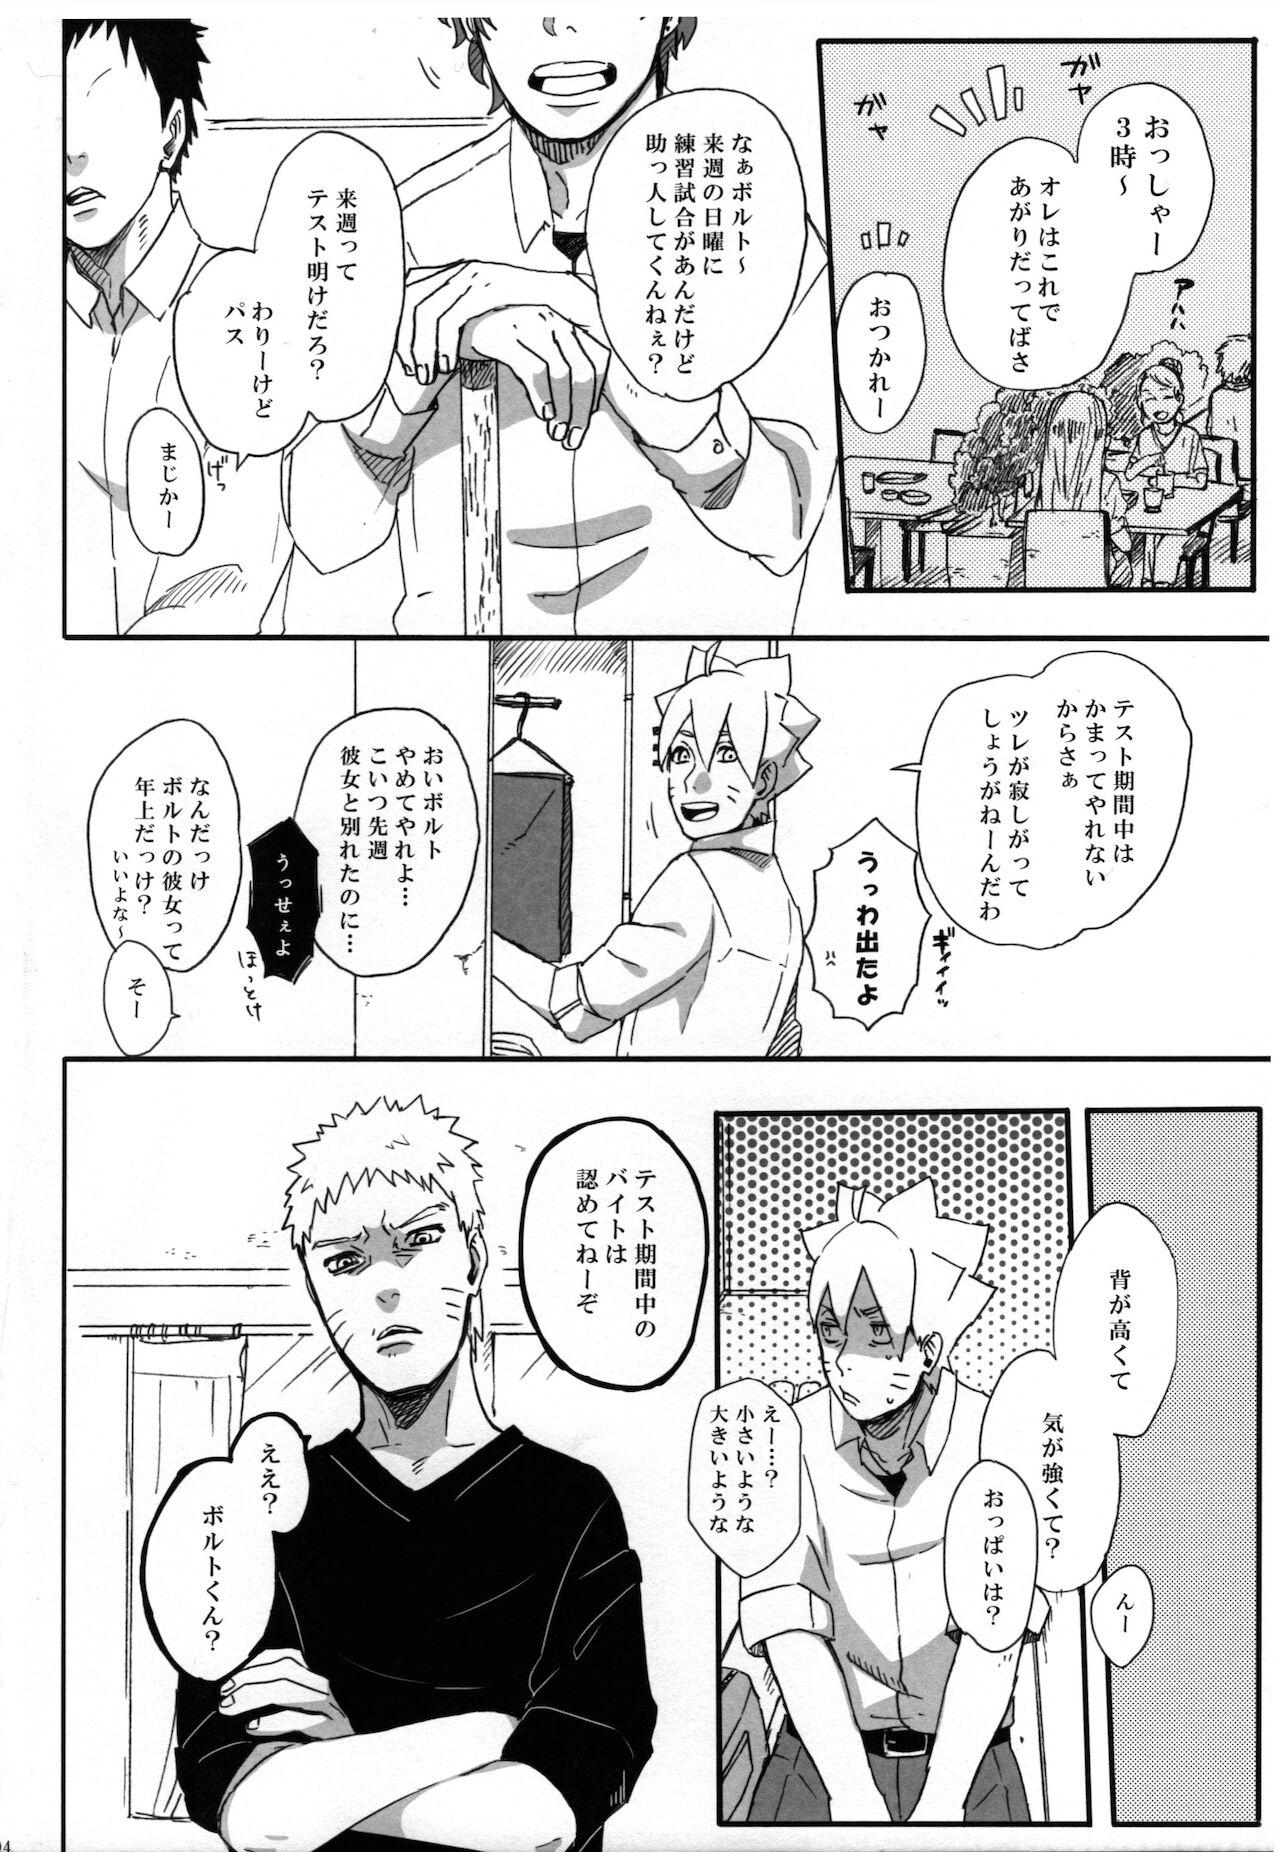 Gaydudes Getsuyou wa itsumo chikoku sunzen - Naruto Squirters - Page 3